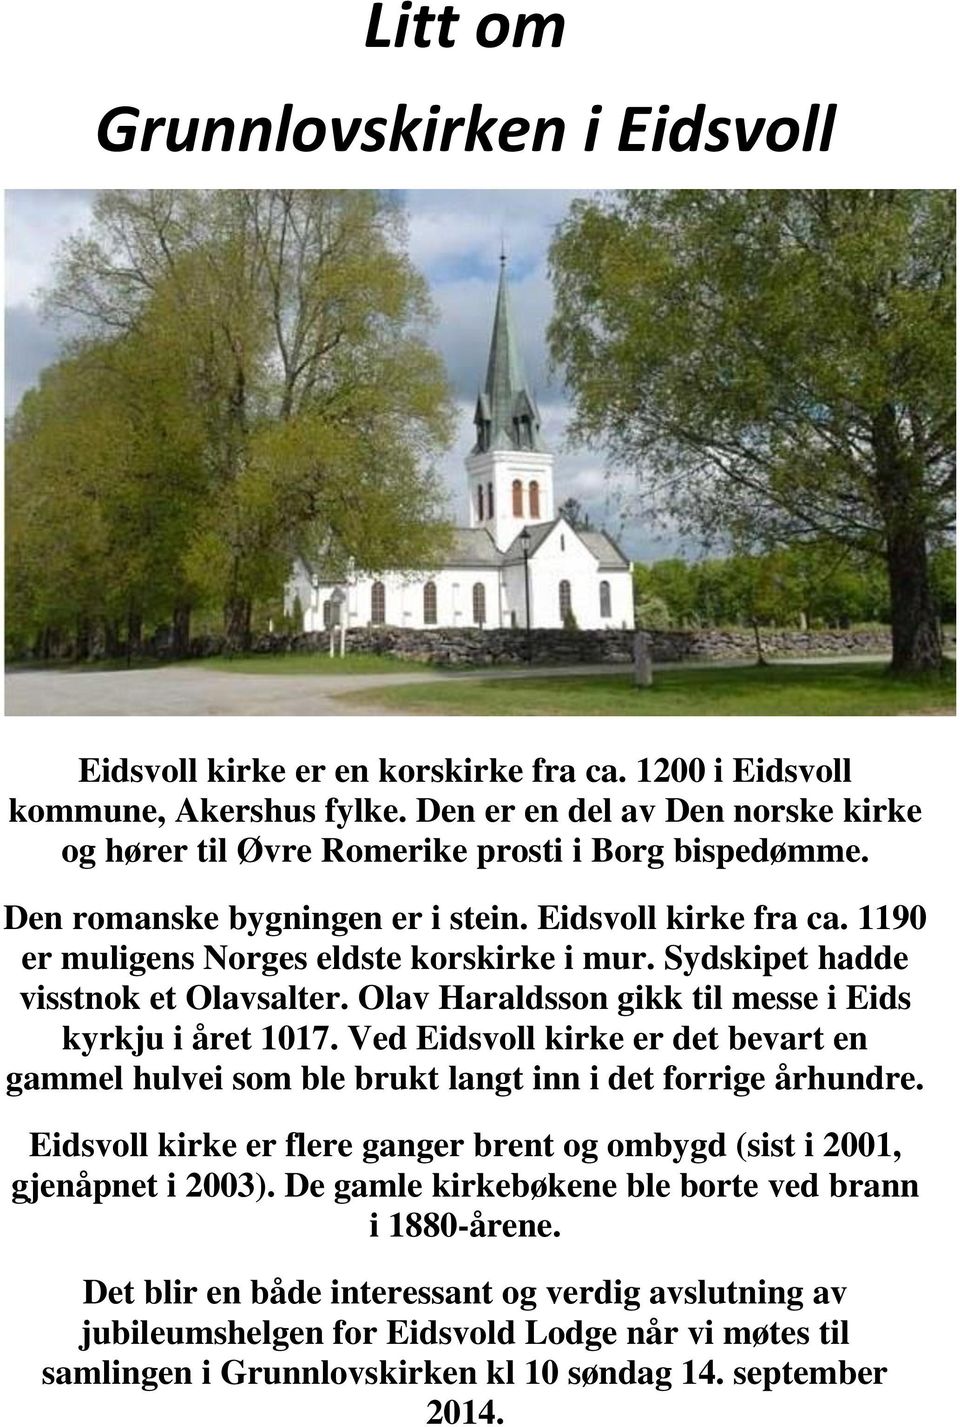 Sydskipet hadde visstnok et Olavsalter. Olav Haraldsson gikk til messe i Eids kyrkju i året 1017. Ved Eidsvoll kirke er det bevart en gammel hulvei som ble brukt langt inn i det forrige århundre.